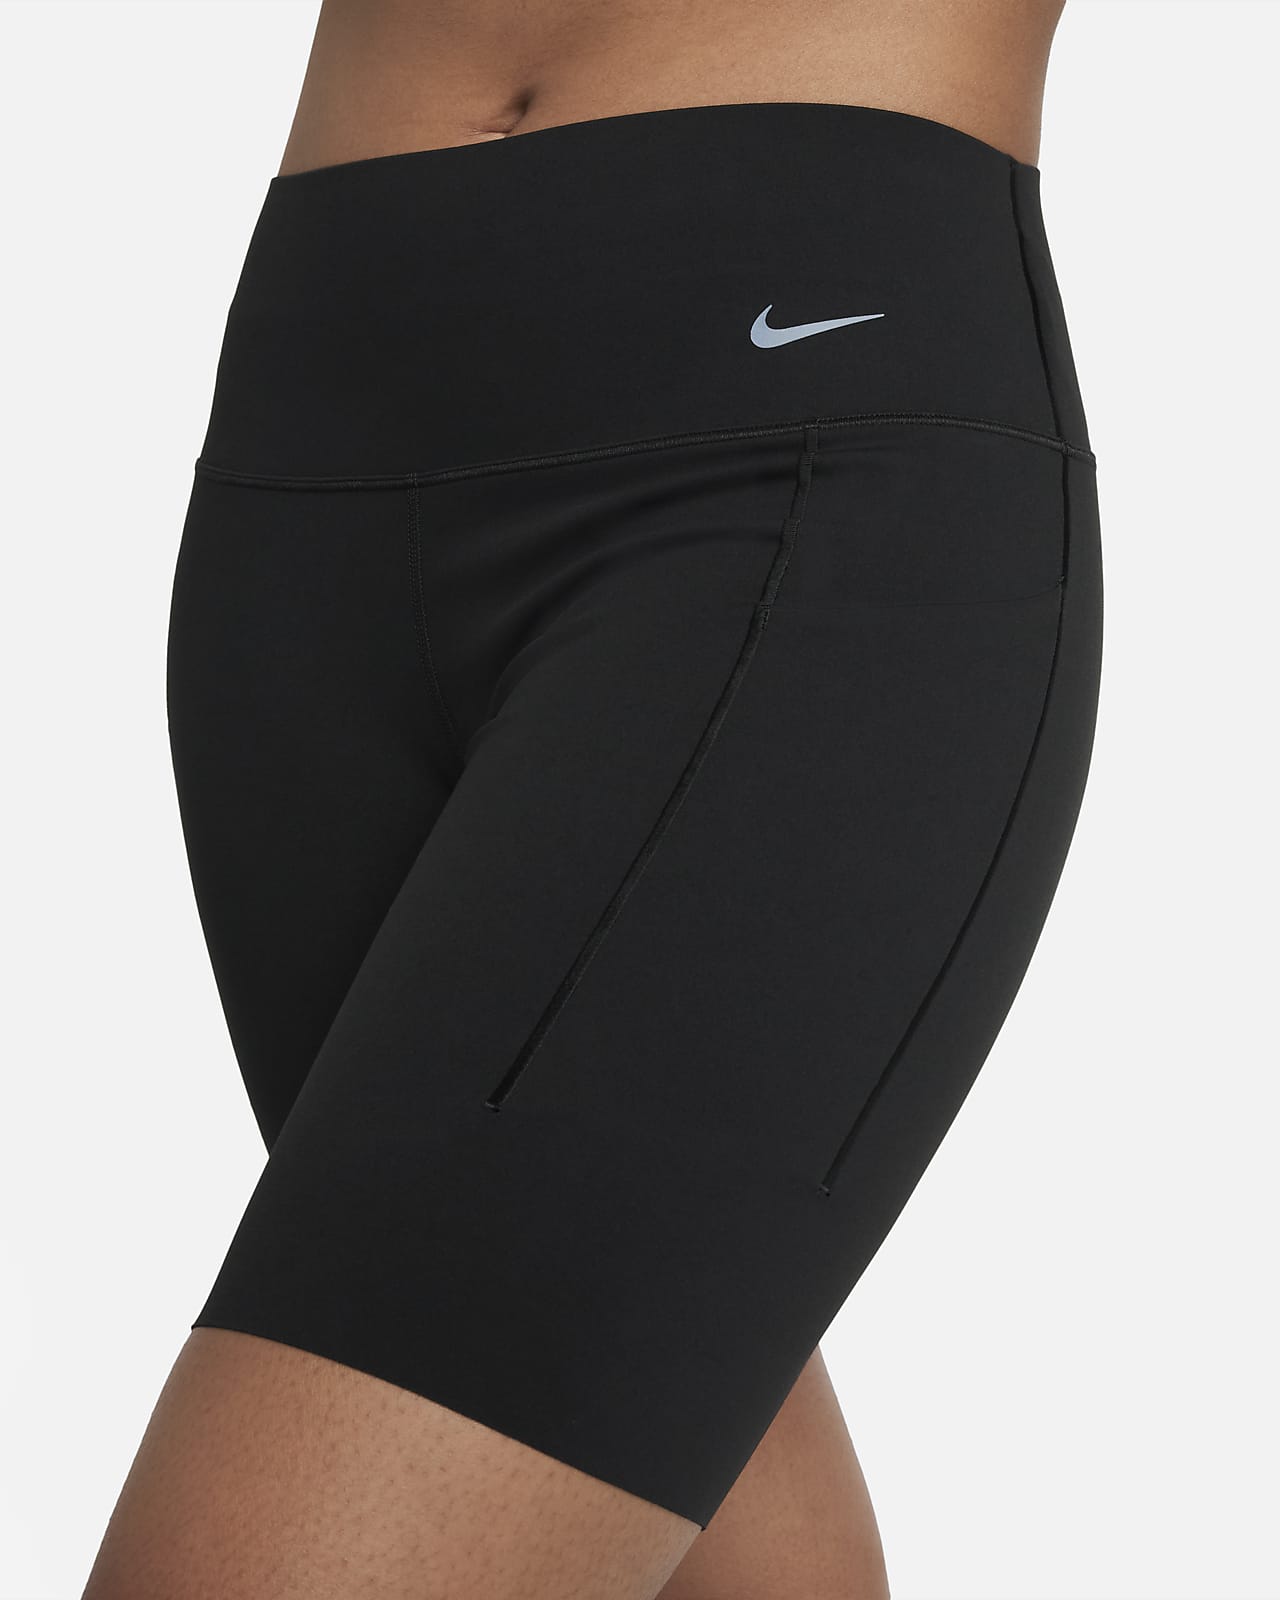 mini mini haul to England, Nike x supreme shorts, minus 2 cargos